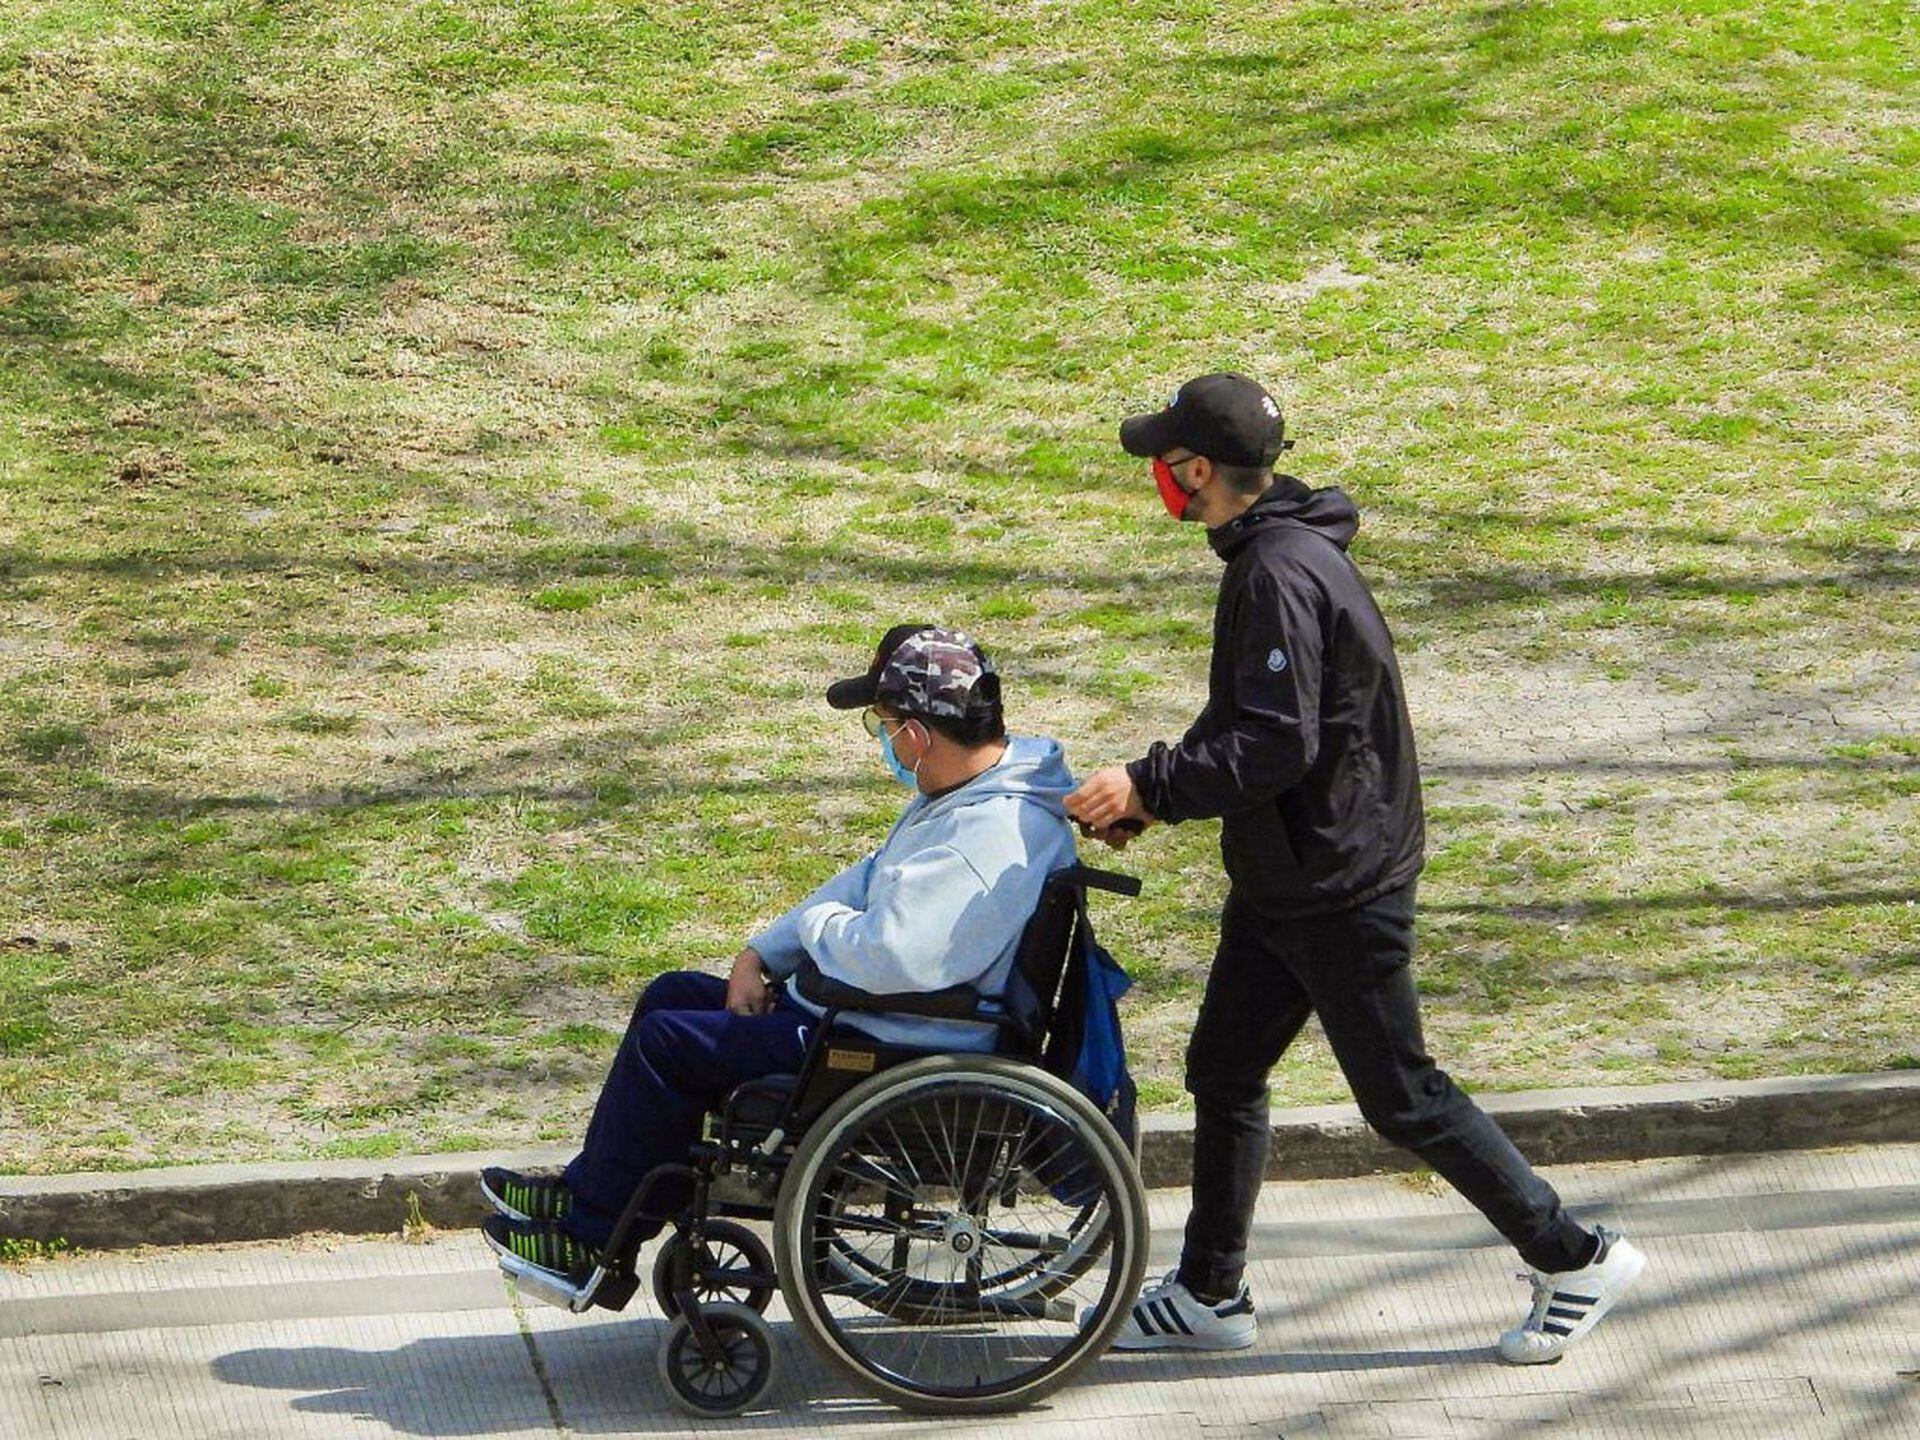 Desde el comienzo de la pandemia, muchos vecinos colaboraron ayudando a salir a pasear a personas con discapacidad que estaban solas o con su familia lejos